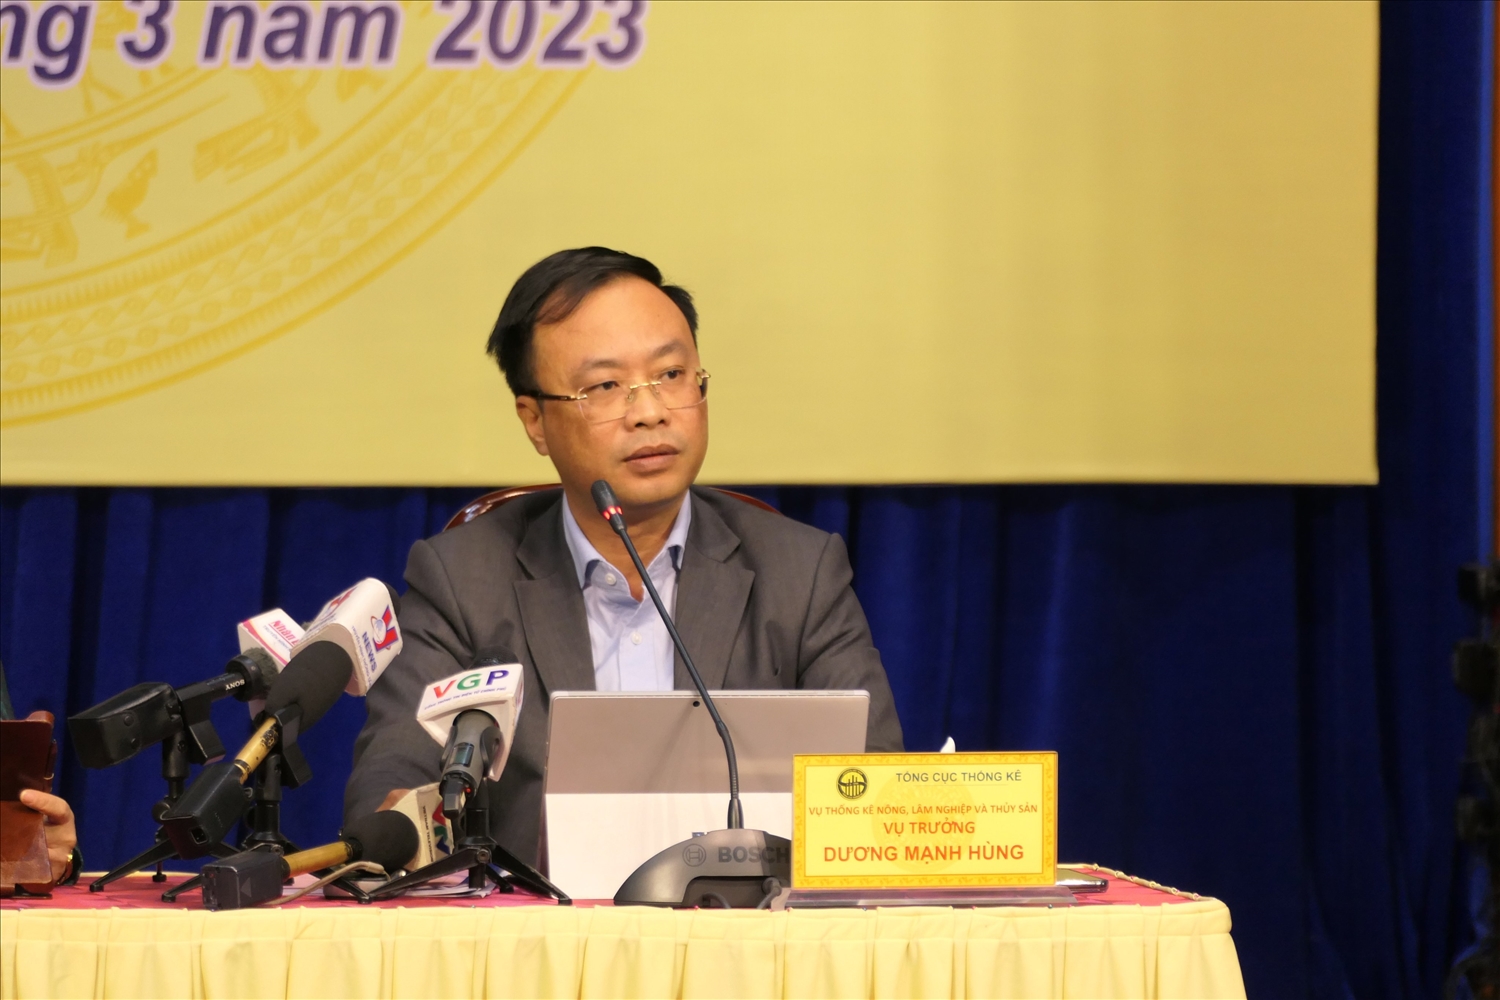 Vụ trưởng Vụ Thống kê Lâm nghiệp và Thủy sản, Ông Dương Mạnh Hùng phát biểu tại Họp báo